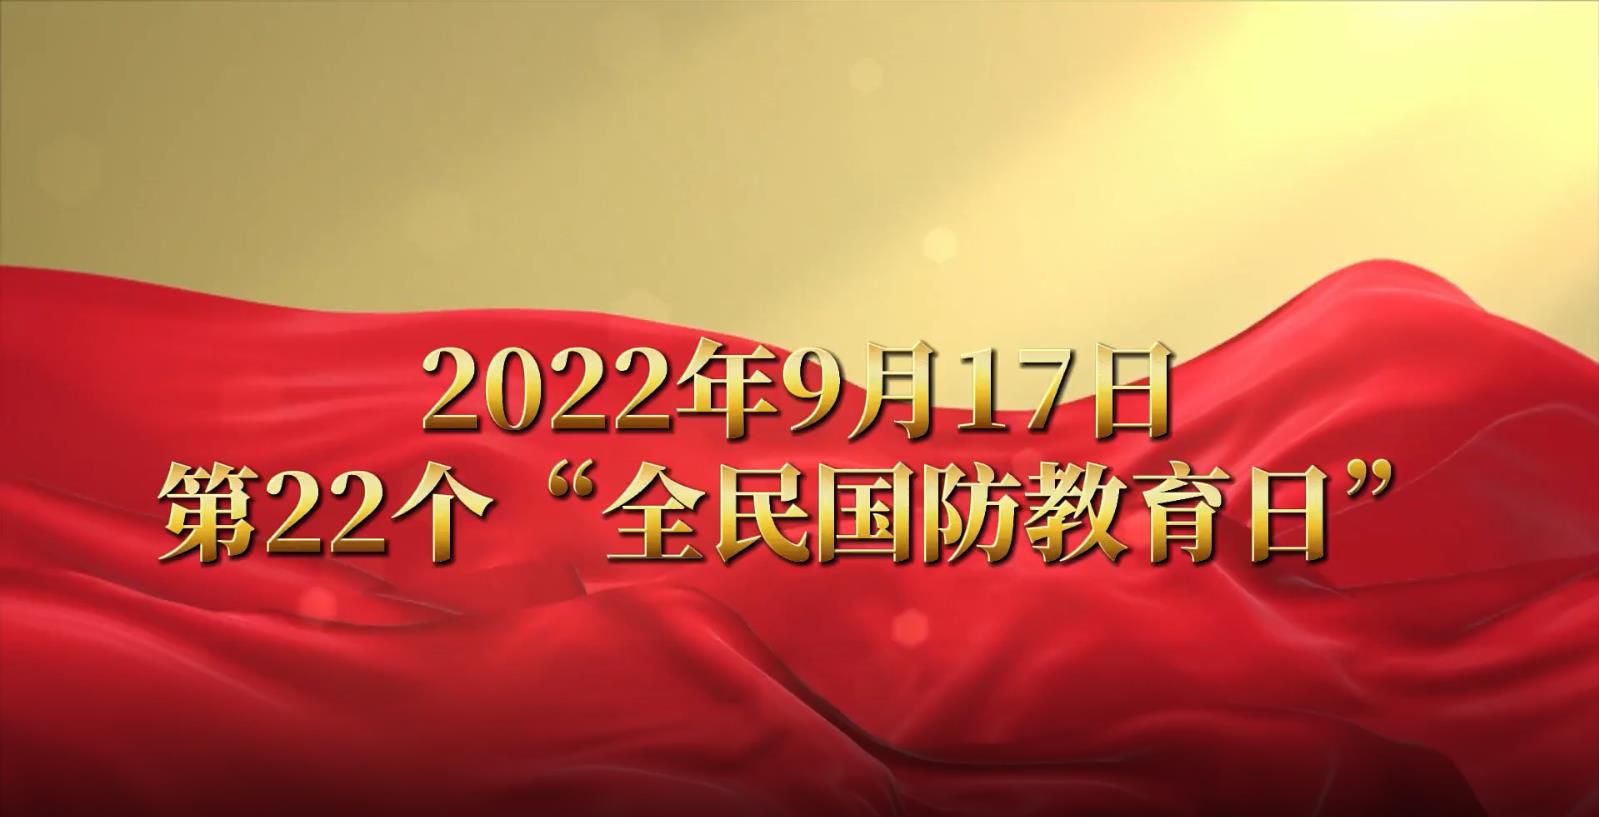 贵阳市2022年全民国防教育日宣传视频上线